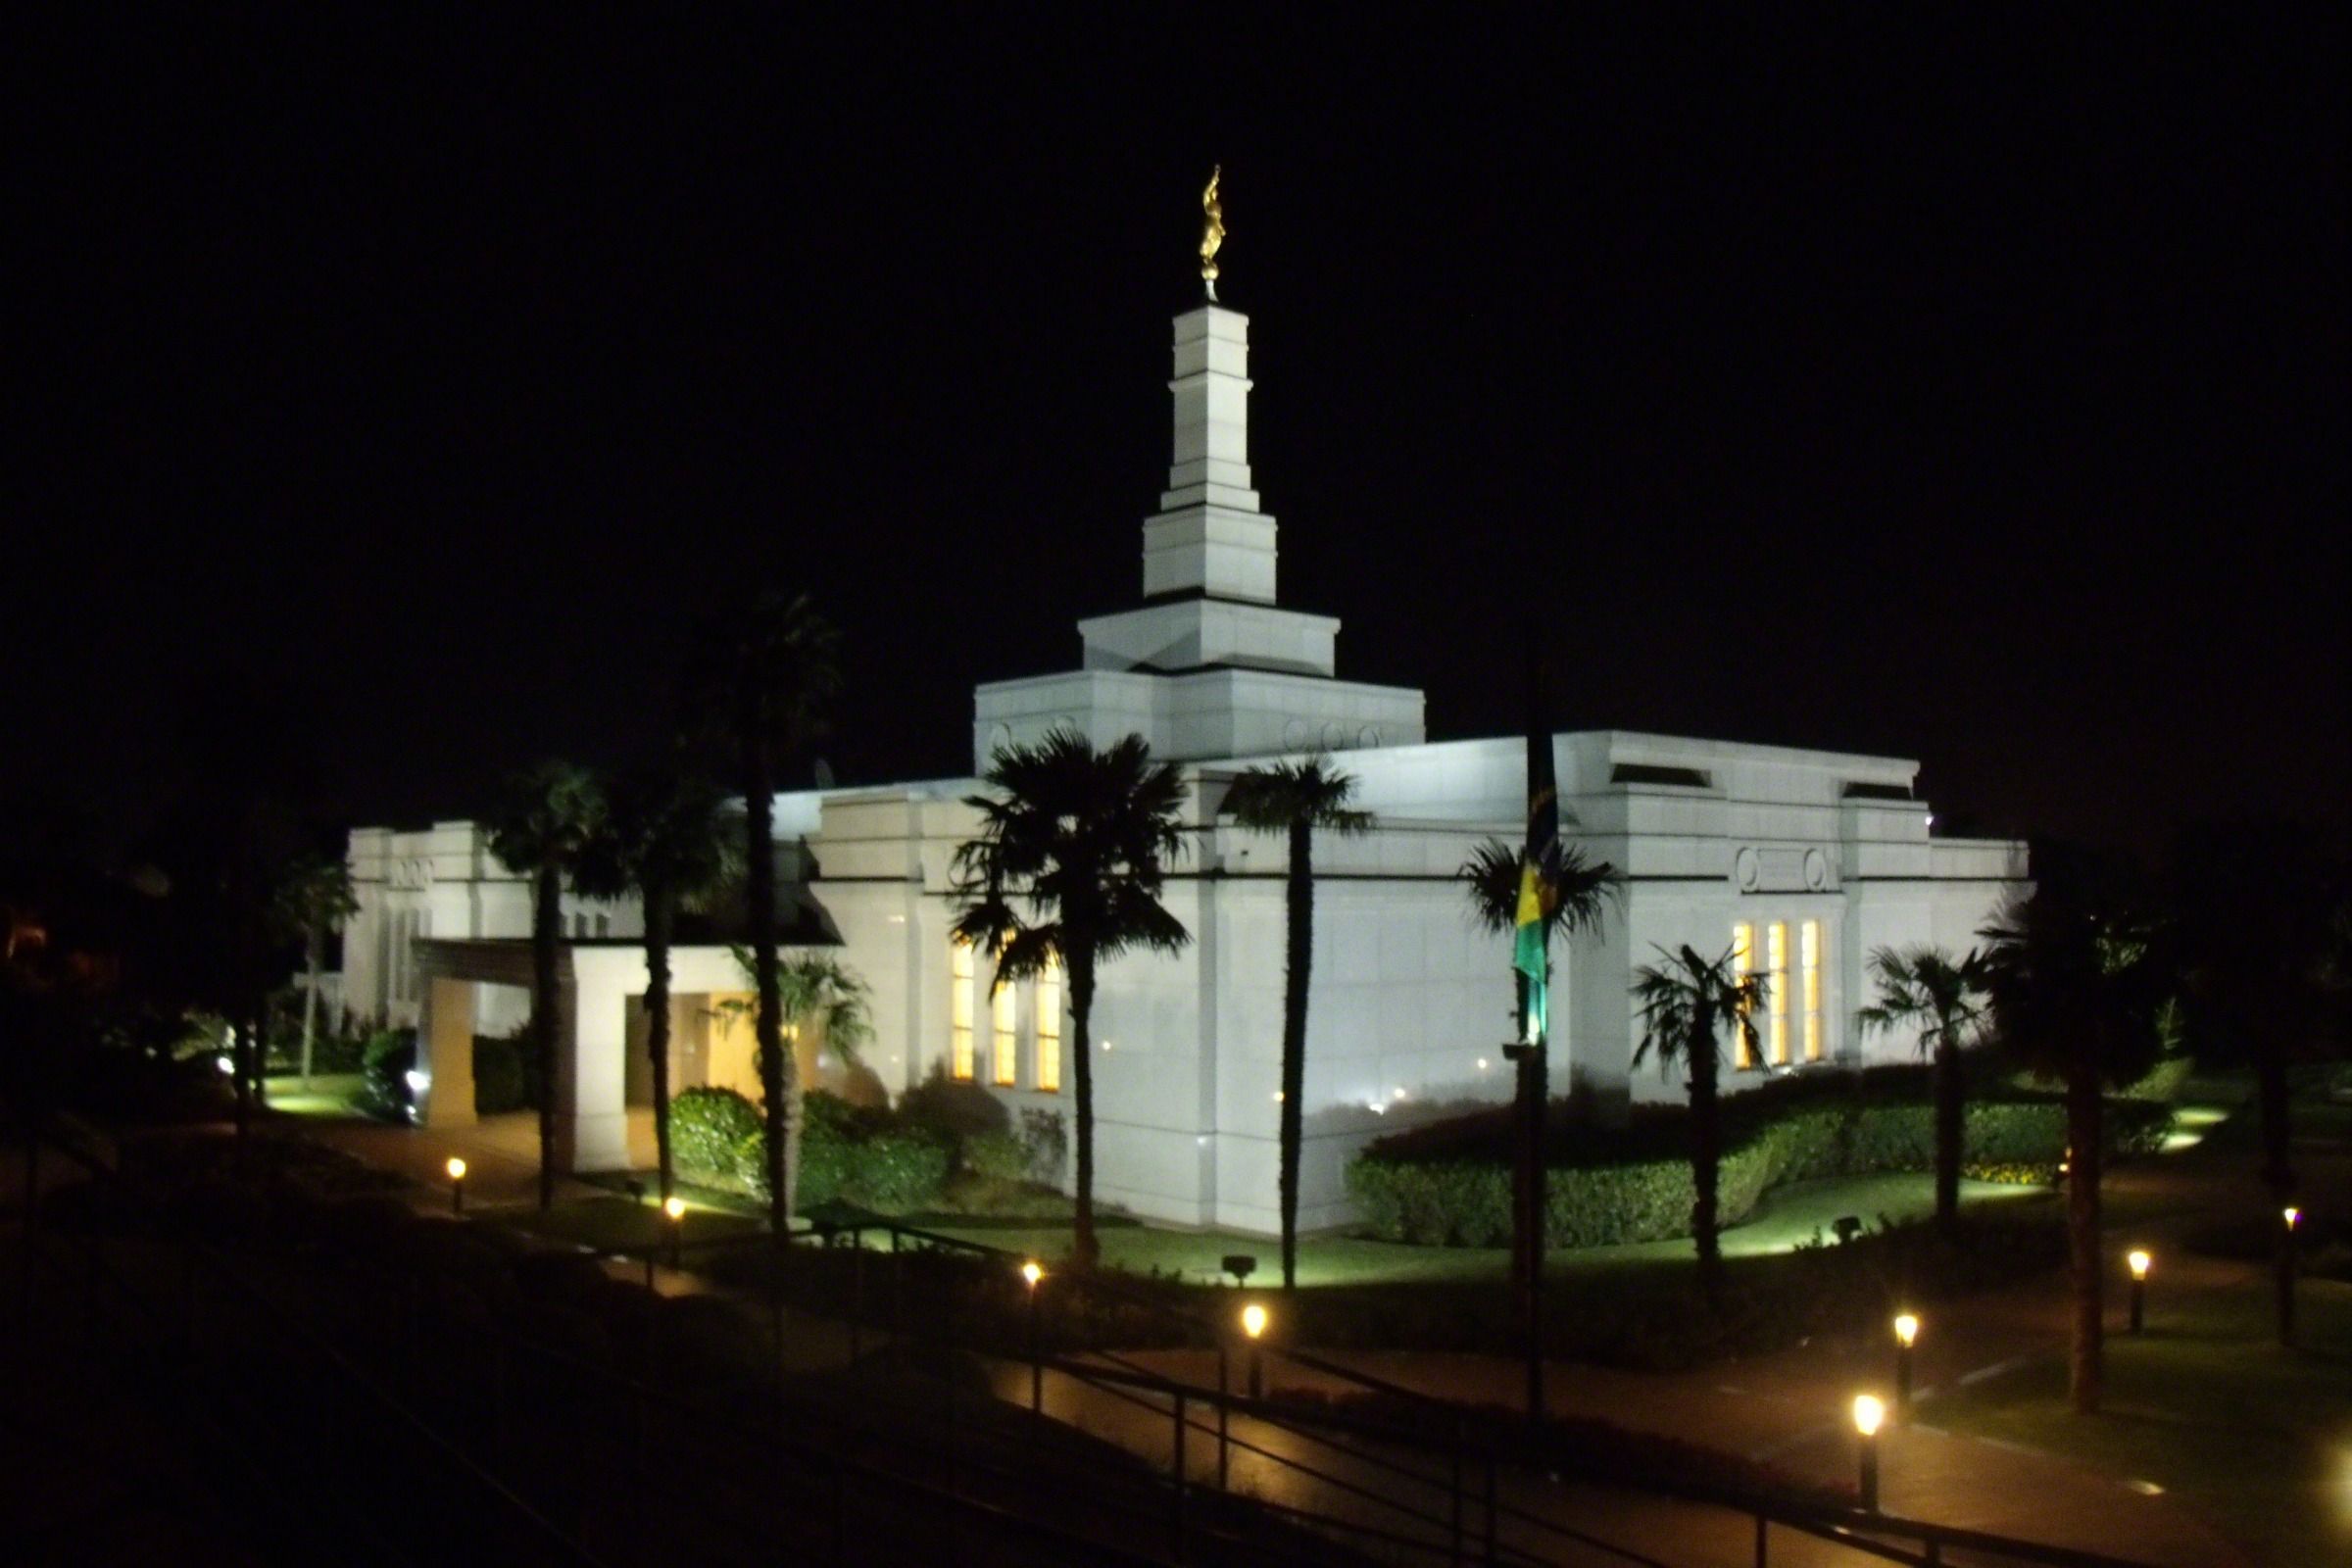 Porto Alegre Brazil Temple in the Evening